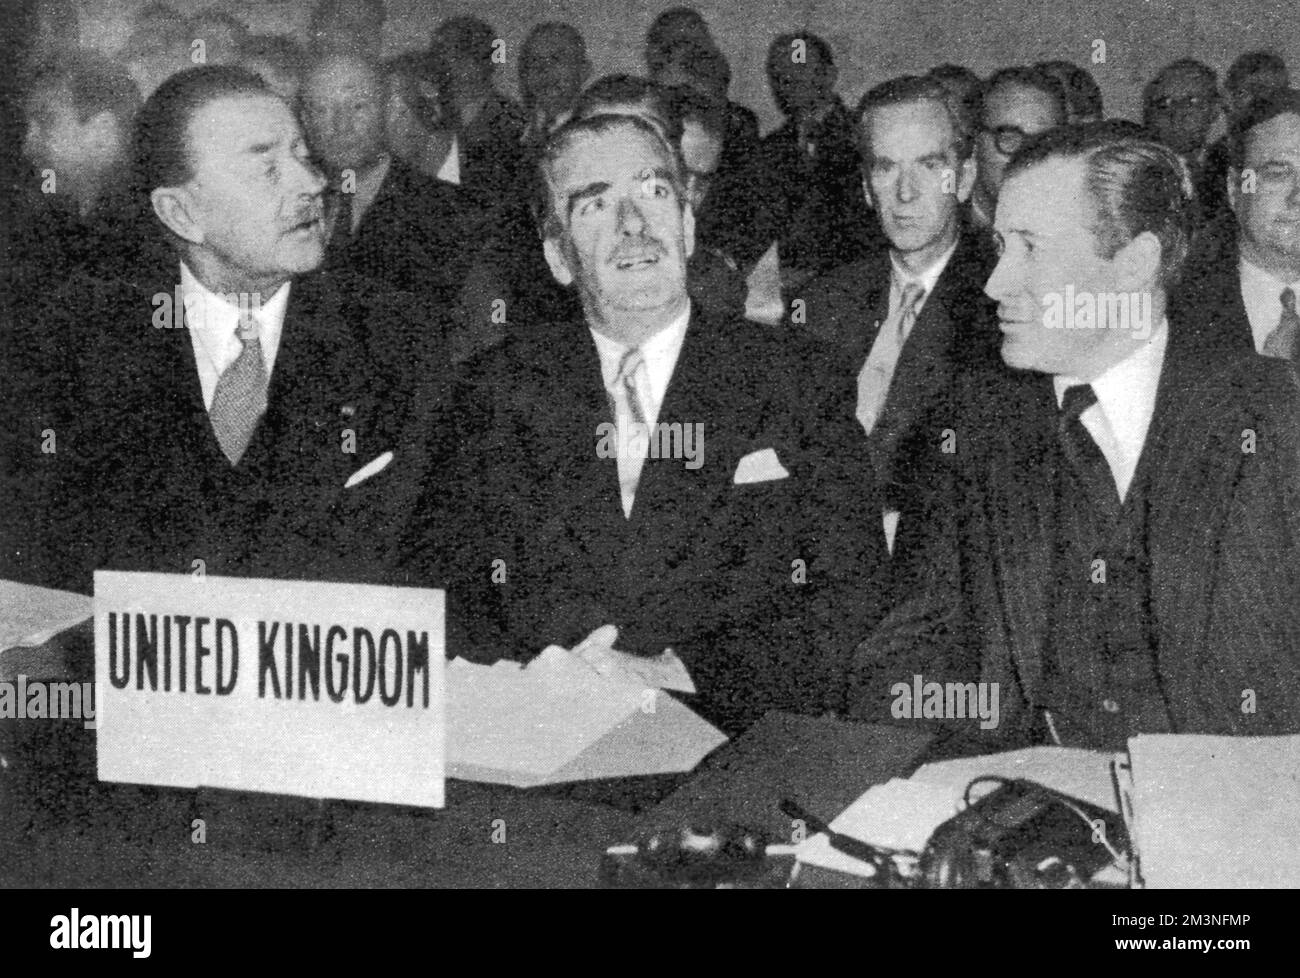 La délégation britannique au conseil de l'OTAN: M. Anthony Eden (centre), à l'époque ministre des Affaires étrangères, avec (à gauche) Lord Alexander, ministre de la Défense, et à droite M. Duncan Sandys, ministre des Approvisionnements. Date : décembre 1953 Banque D'Images